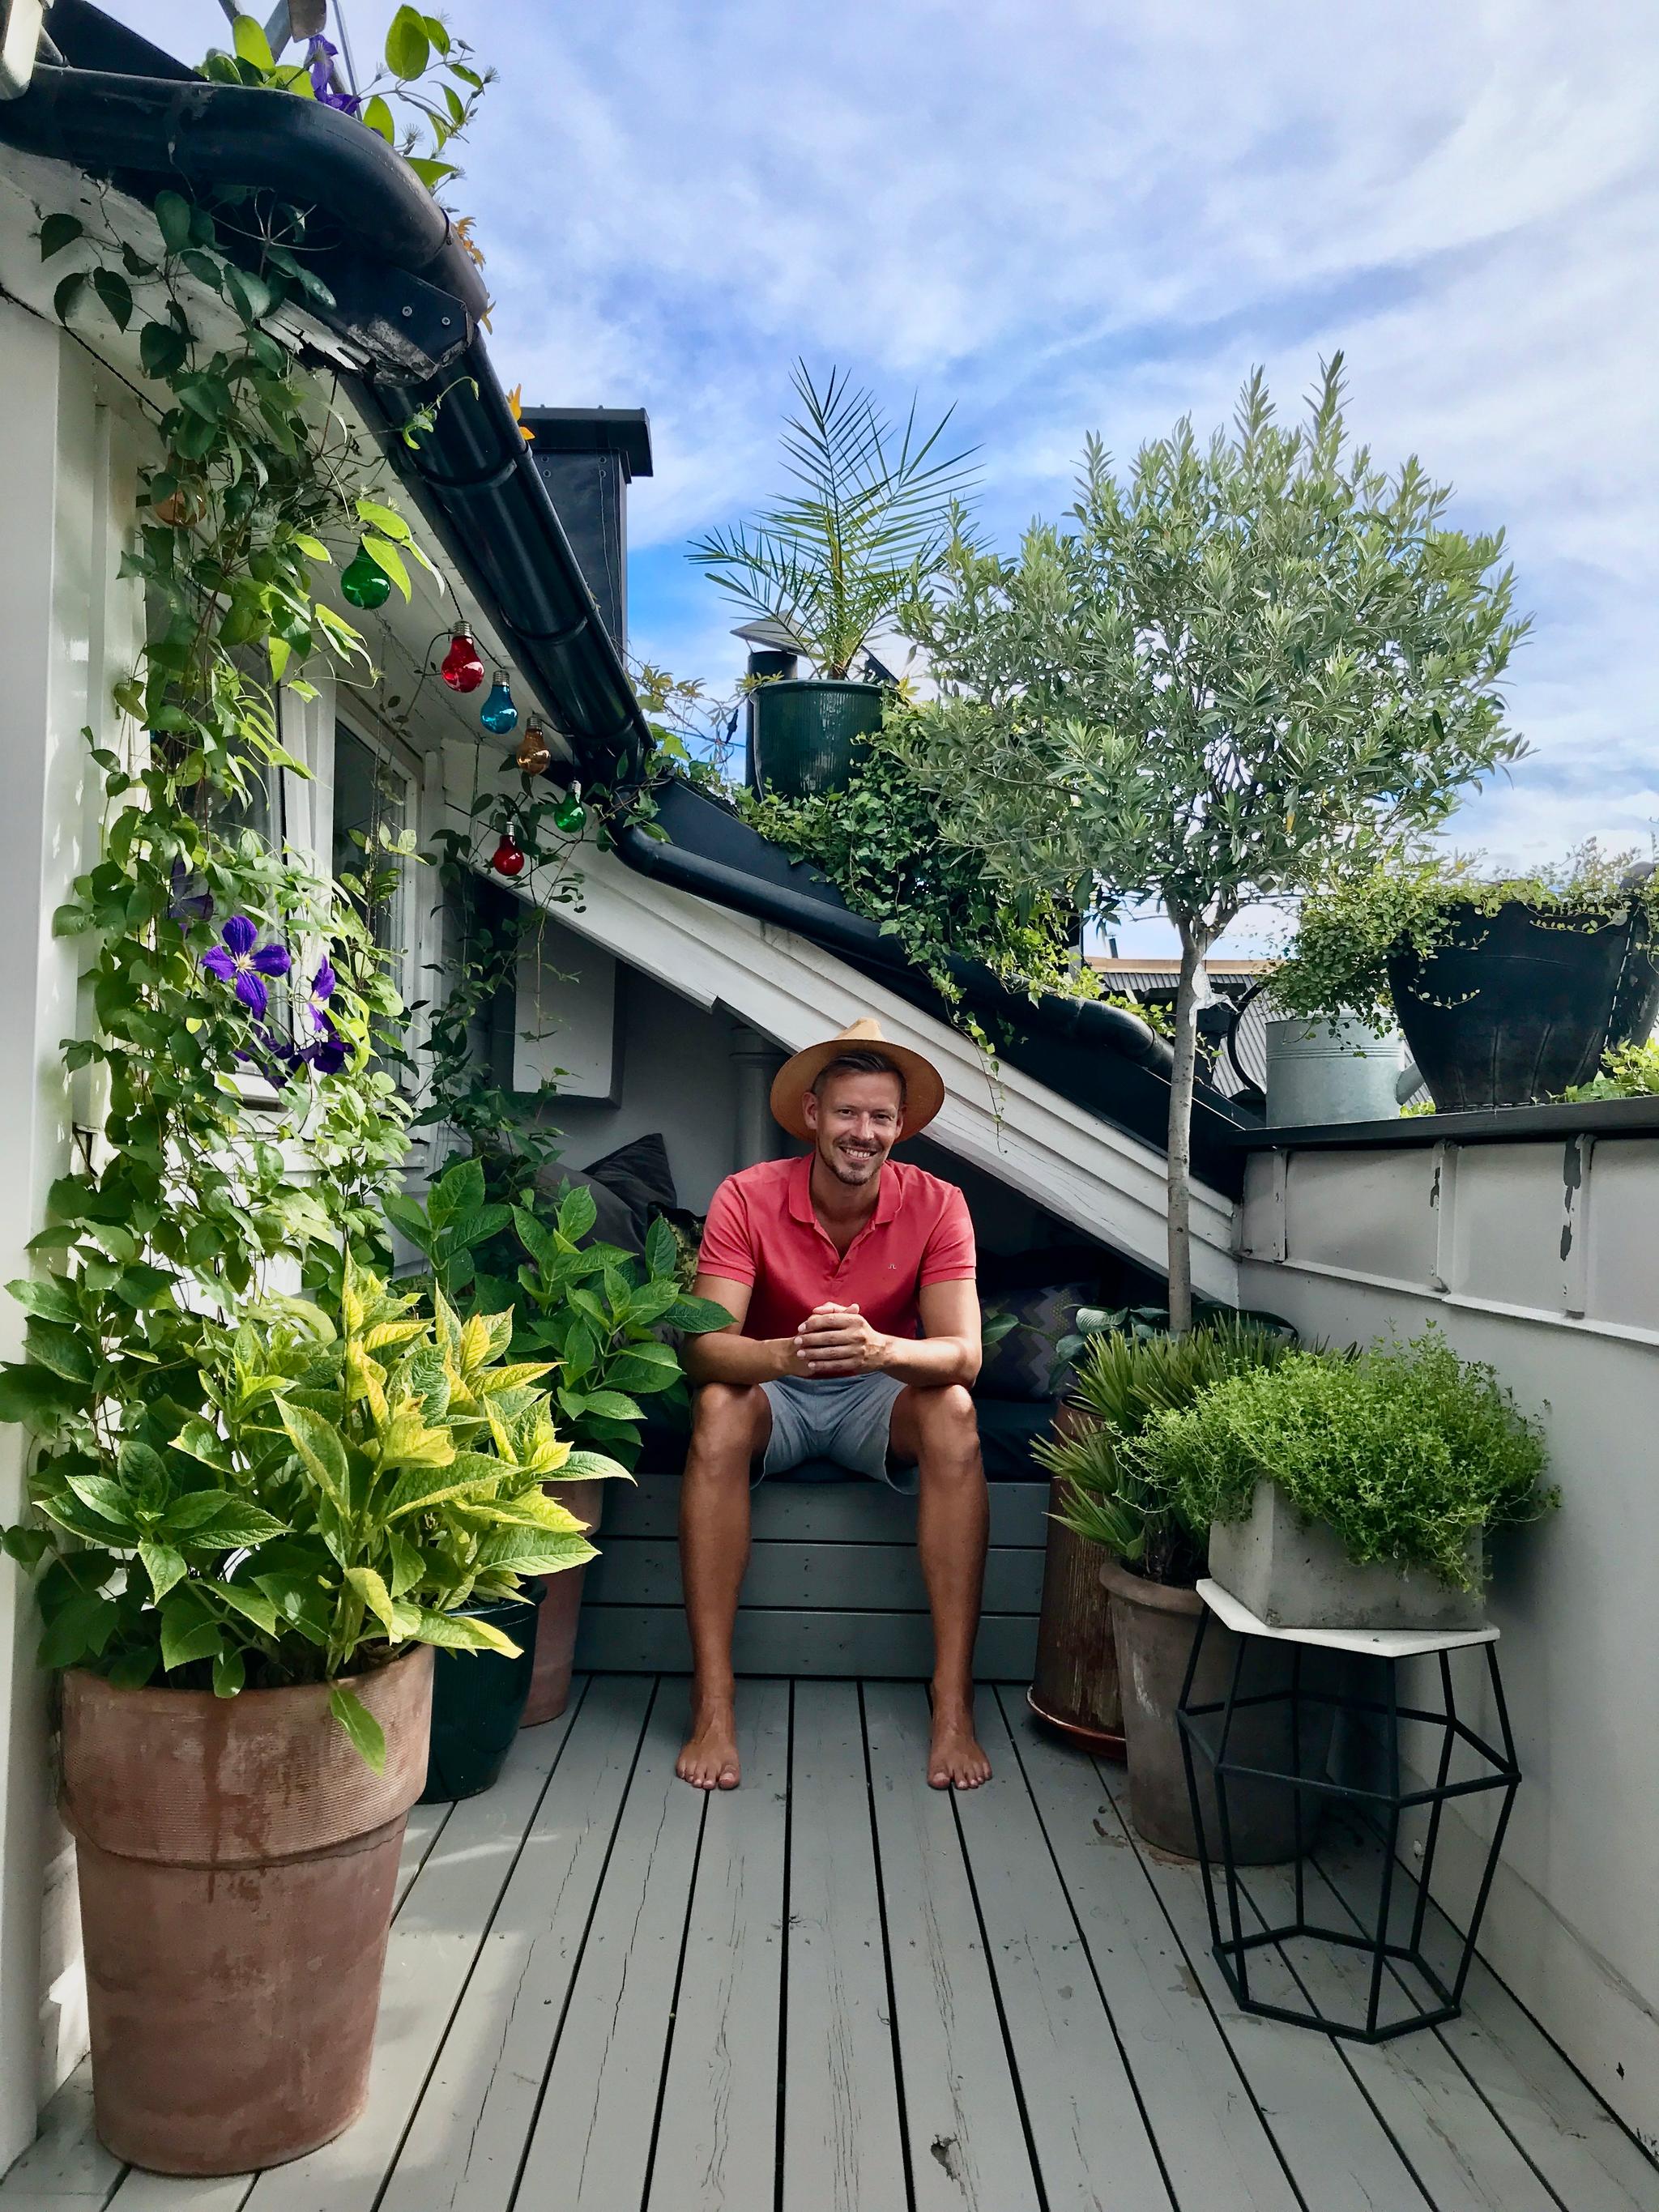 Anders Røyneberg på balkongen på Grünerløkka. Her laget han en oase av vekster på en relativt liten plass. – Her ble det både lunt og varmt, perfekte forhold for krukker med middelhavsurter som timian og oregano, oliventre, eføy og den flerårige klatreplanten klematis, sier han.